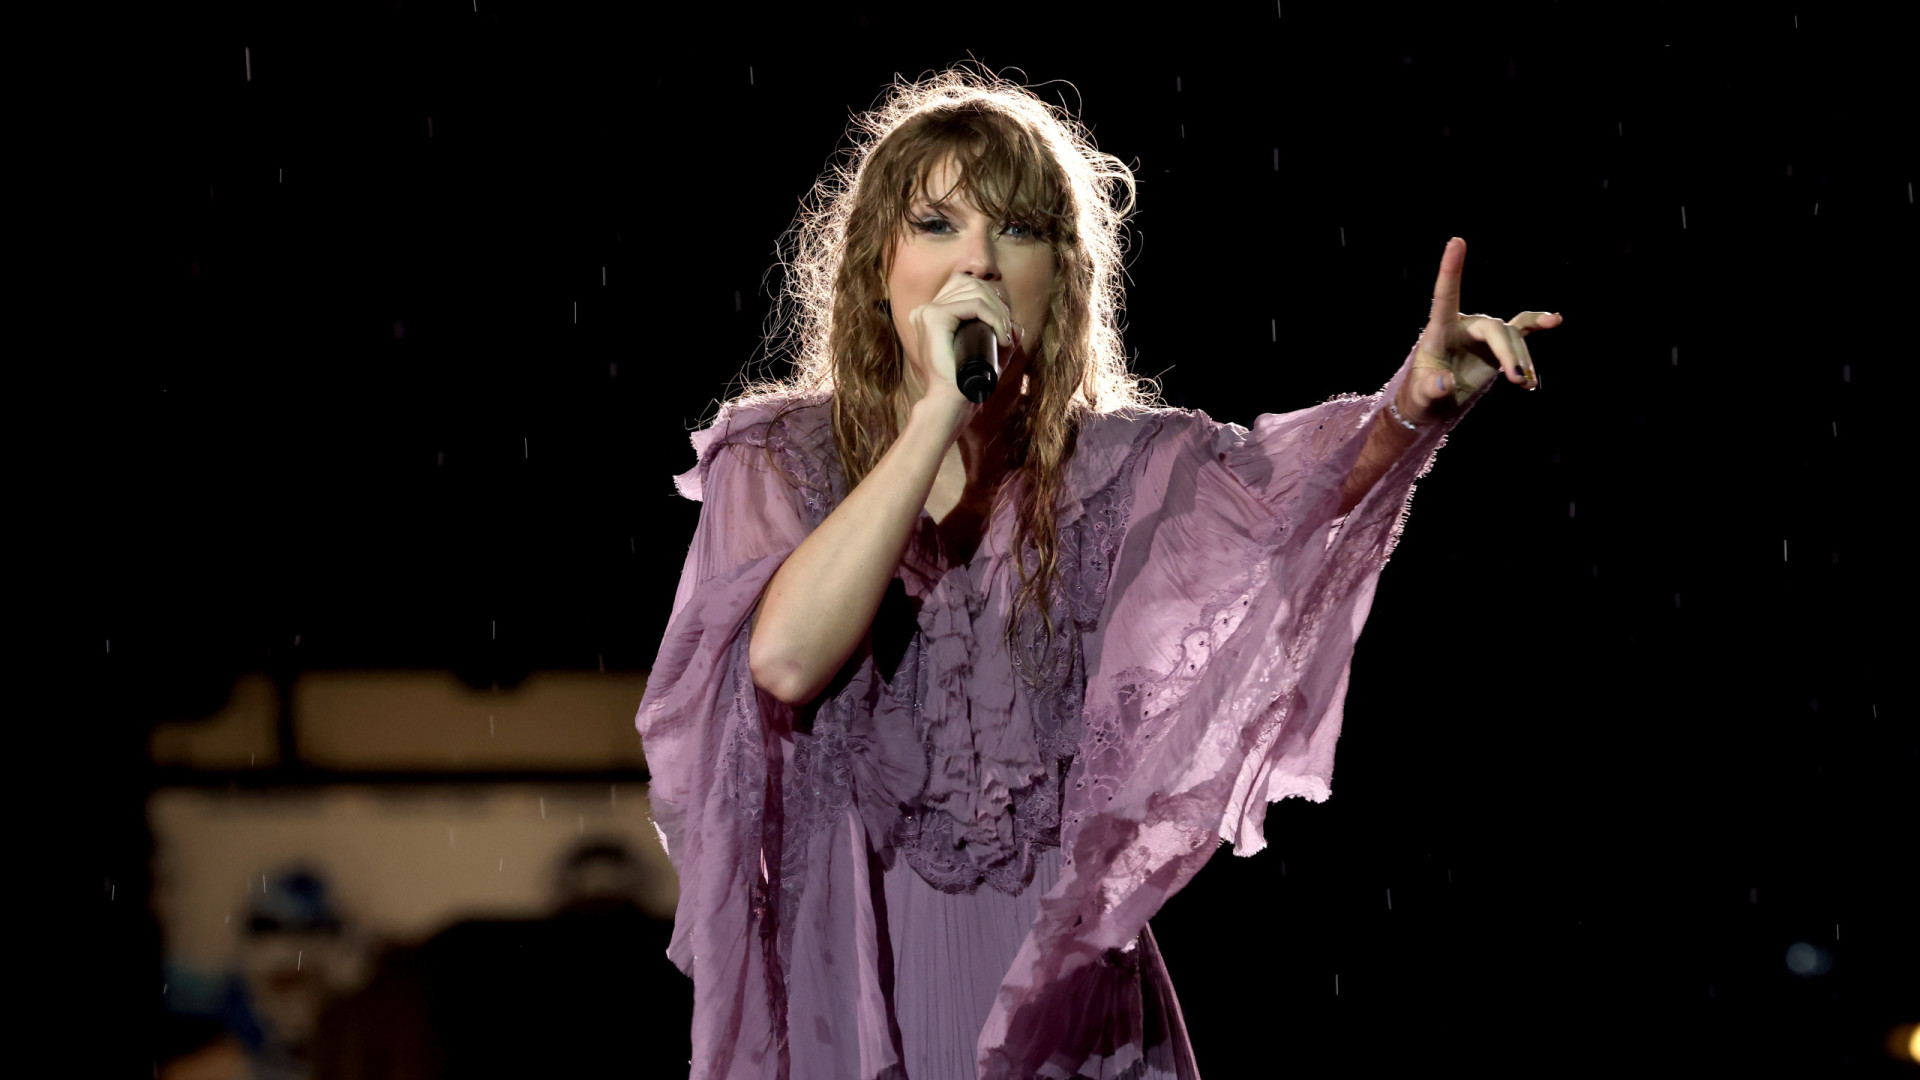 Procon-SP notifica empresa e cobra explicações sobre ingressos da Taylor Swift após confusão